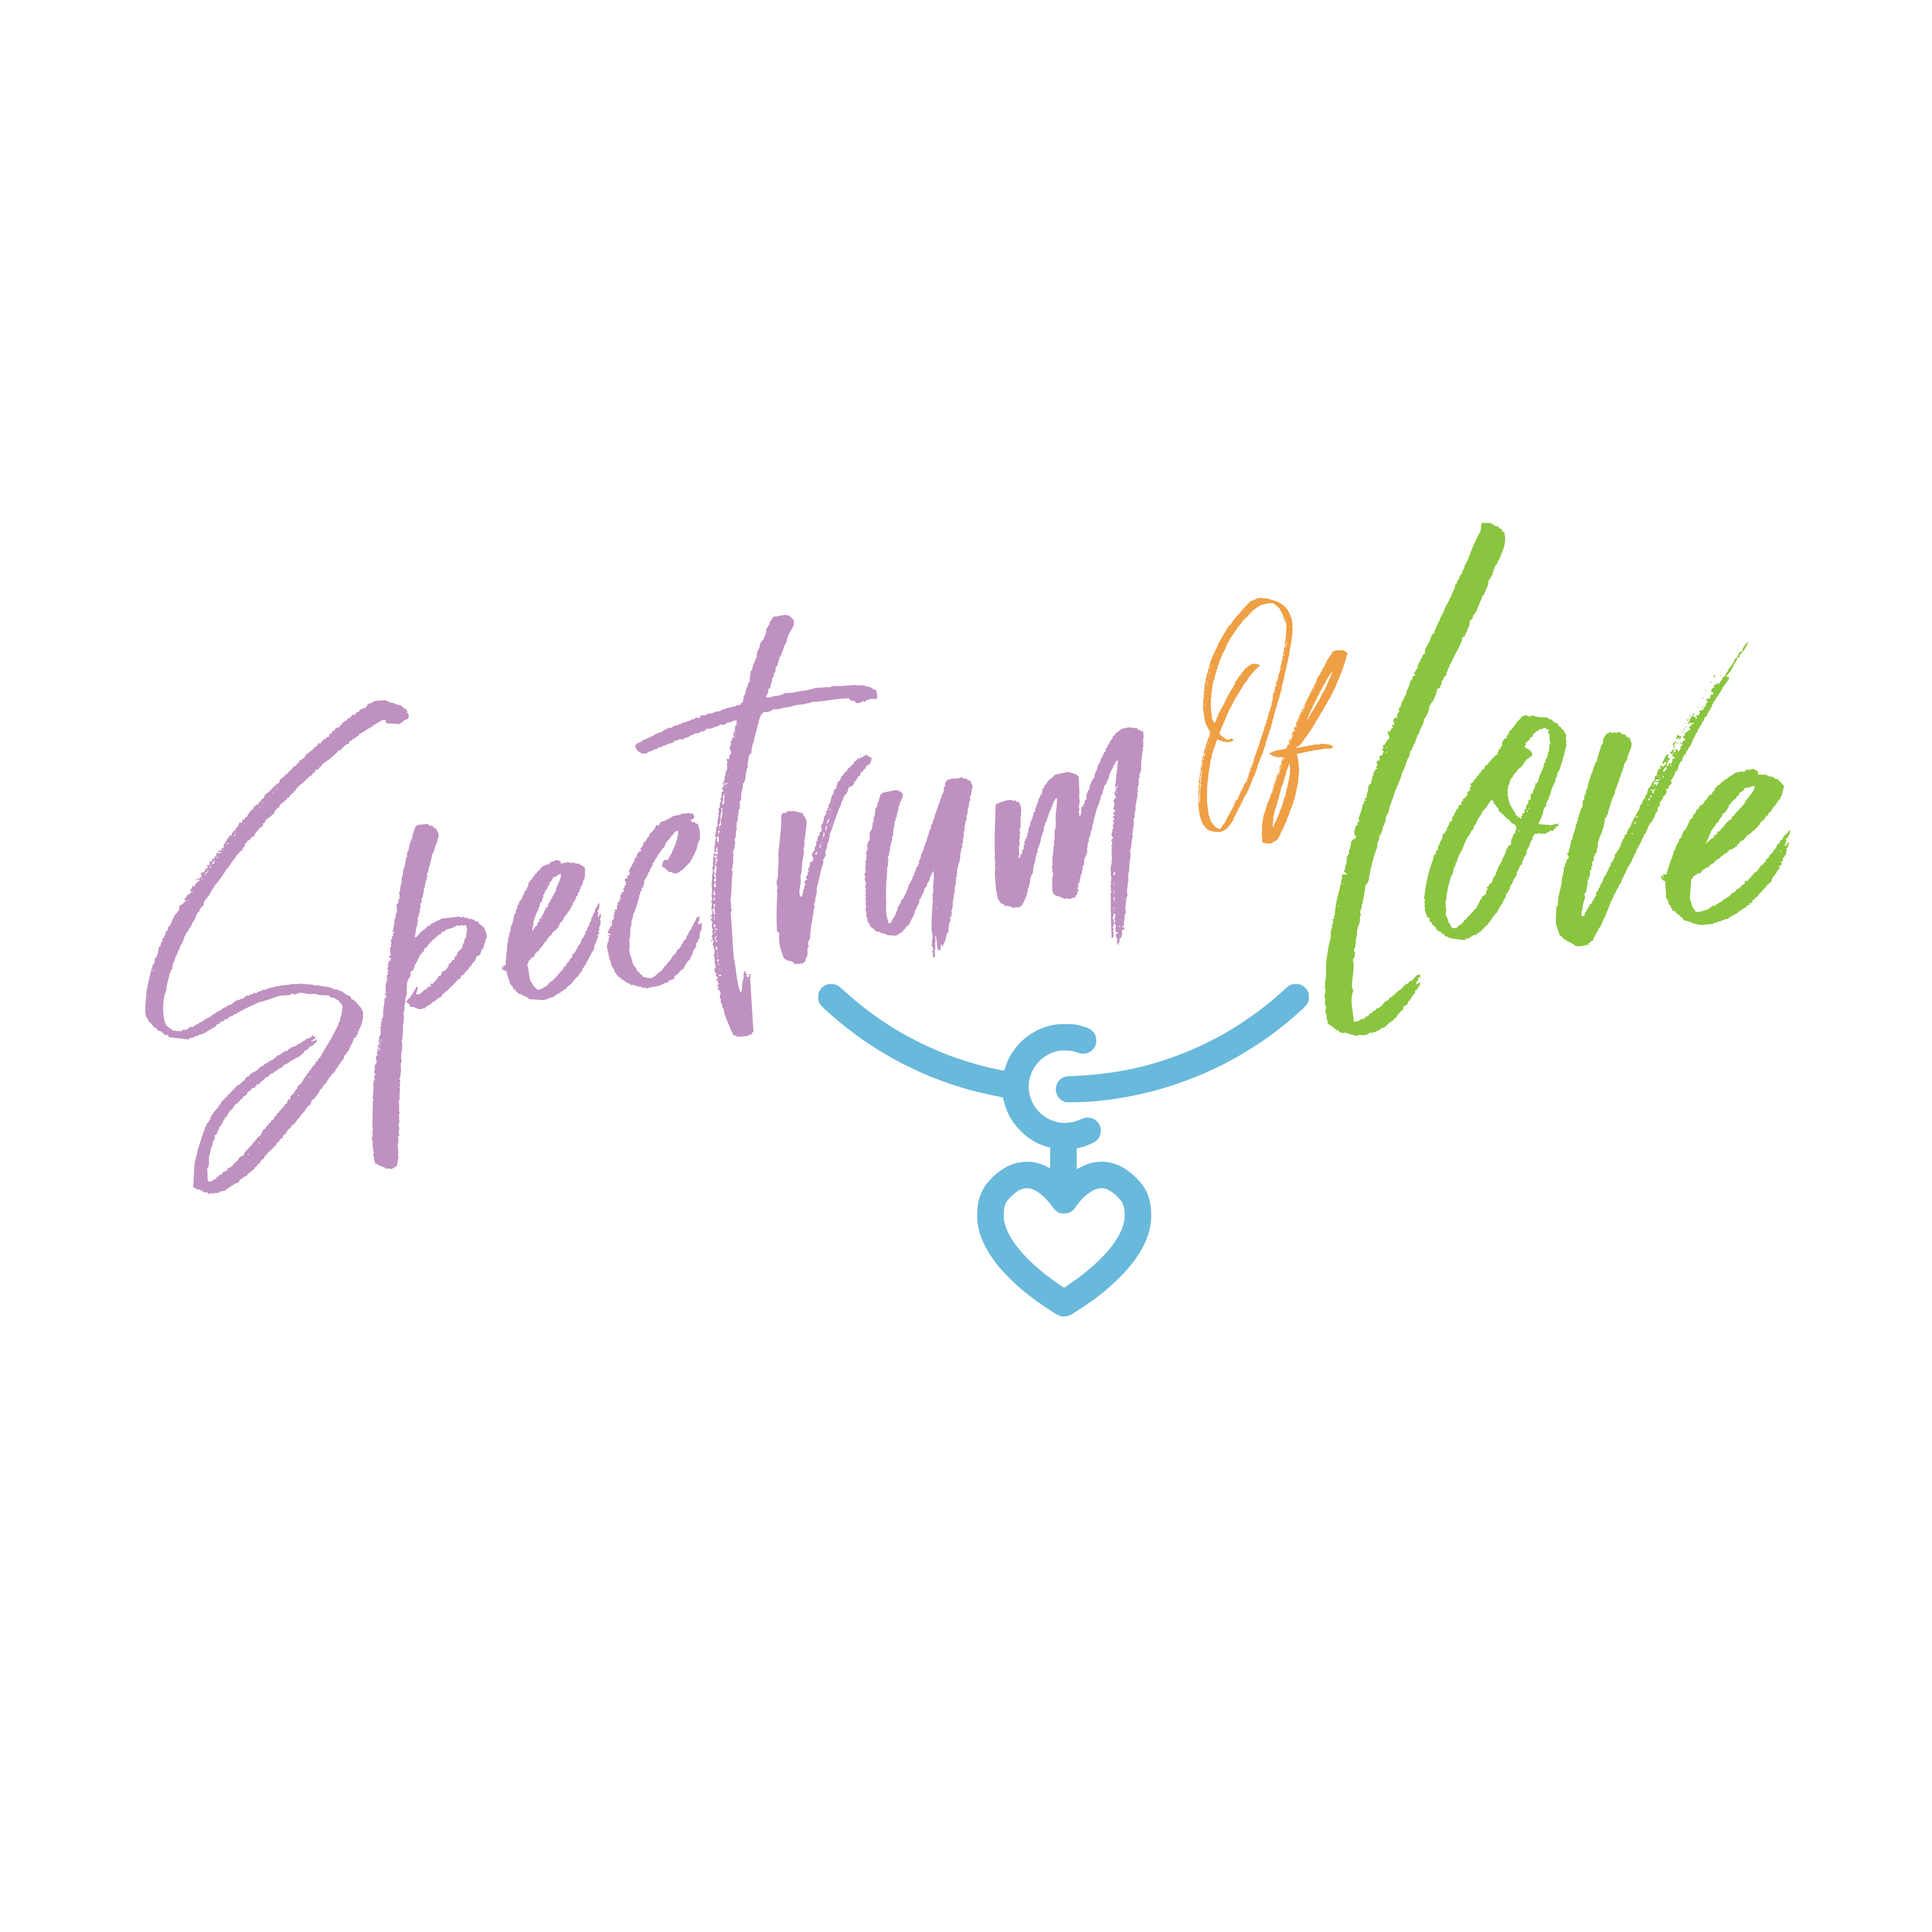 Spectrum of Love